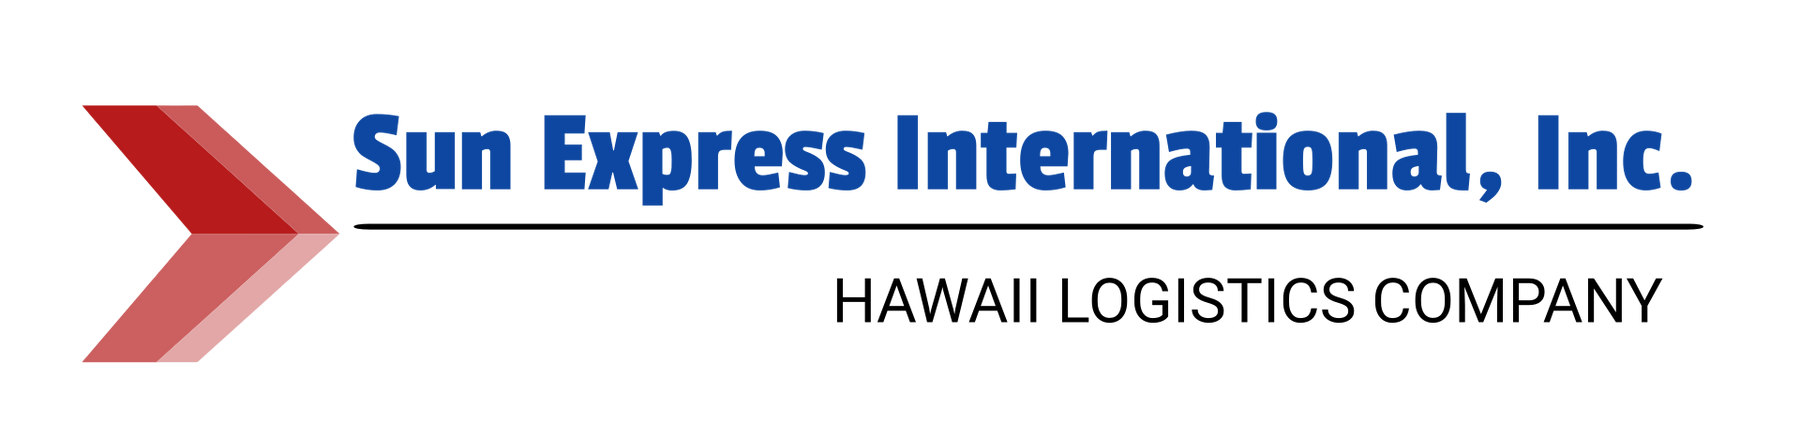 Sun Express International Inc.